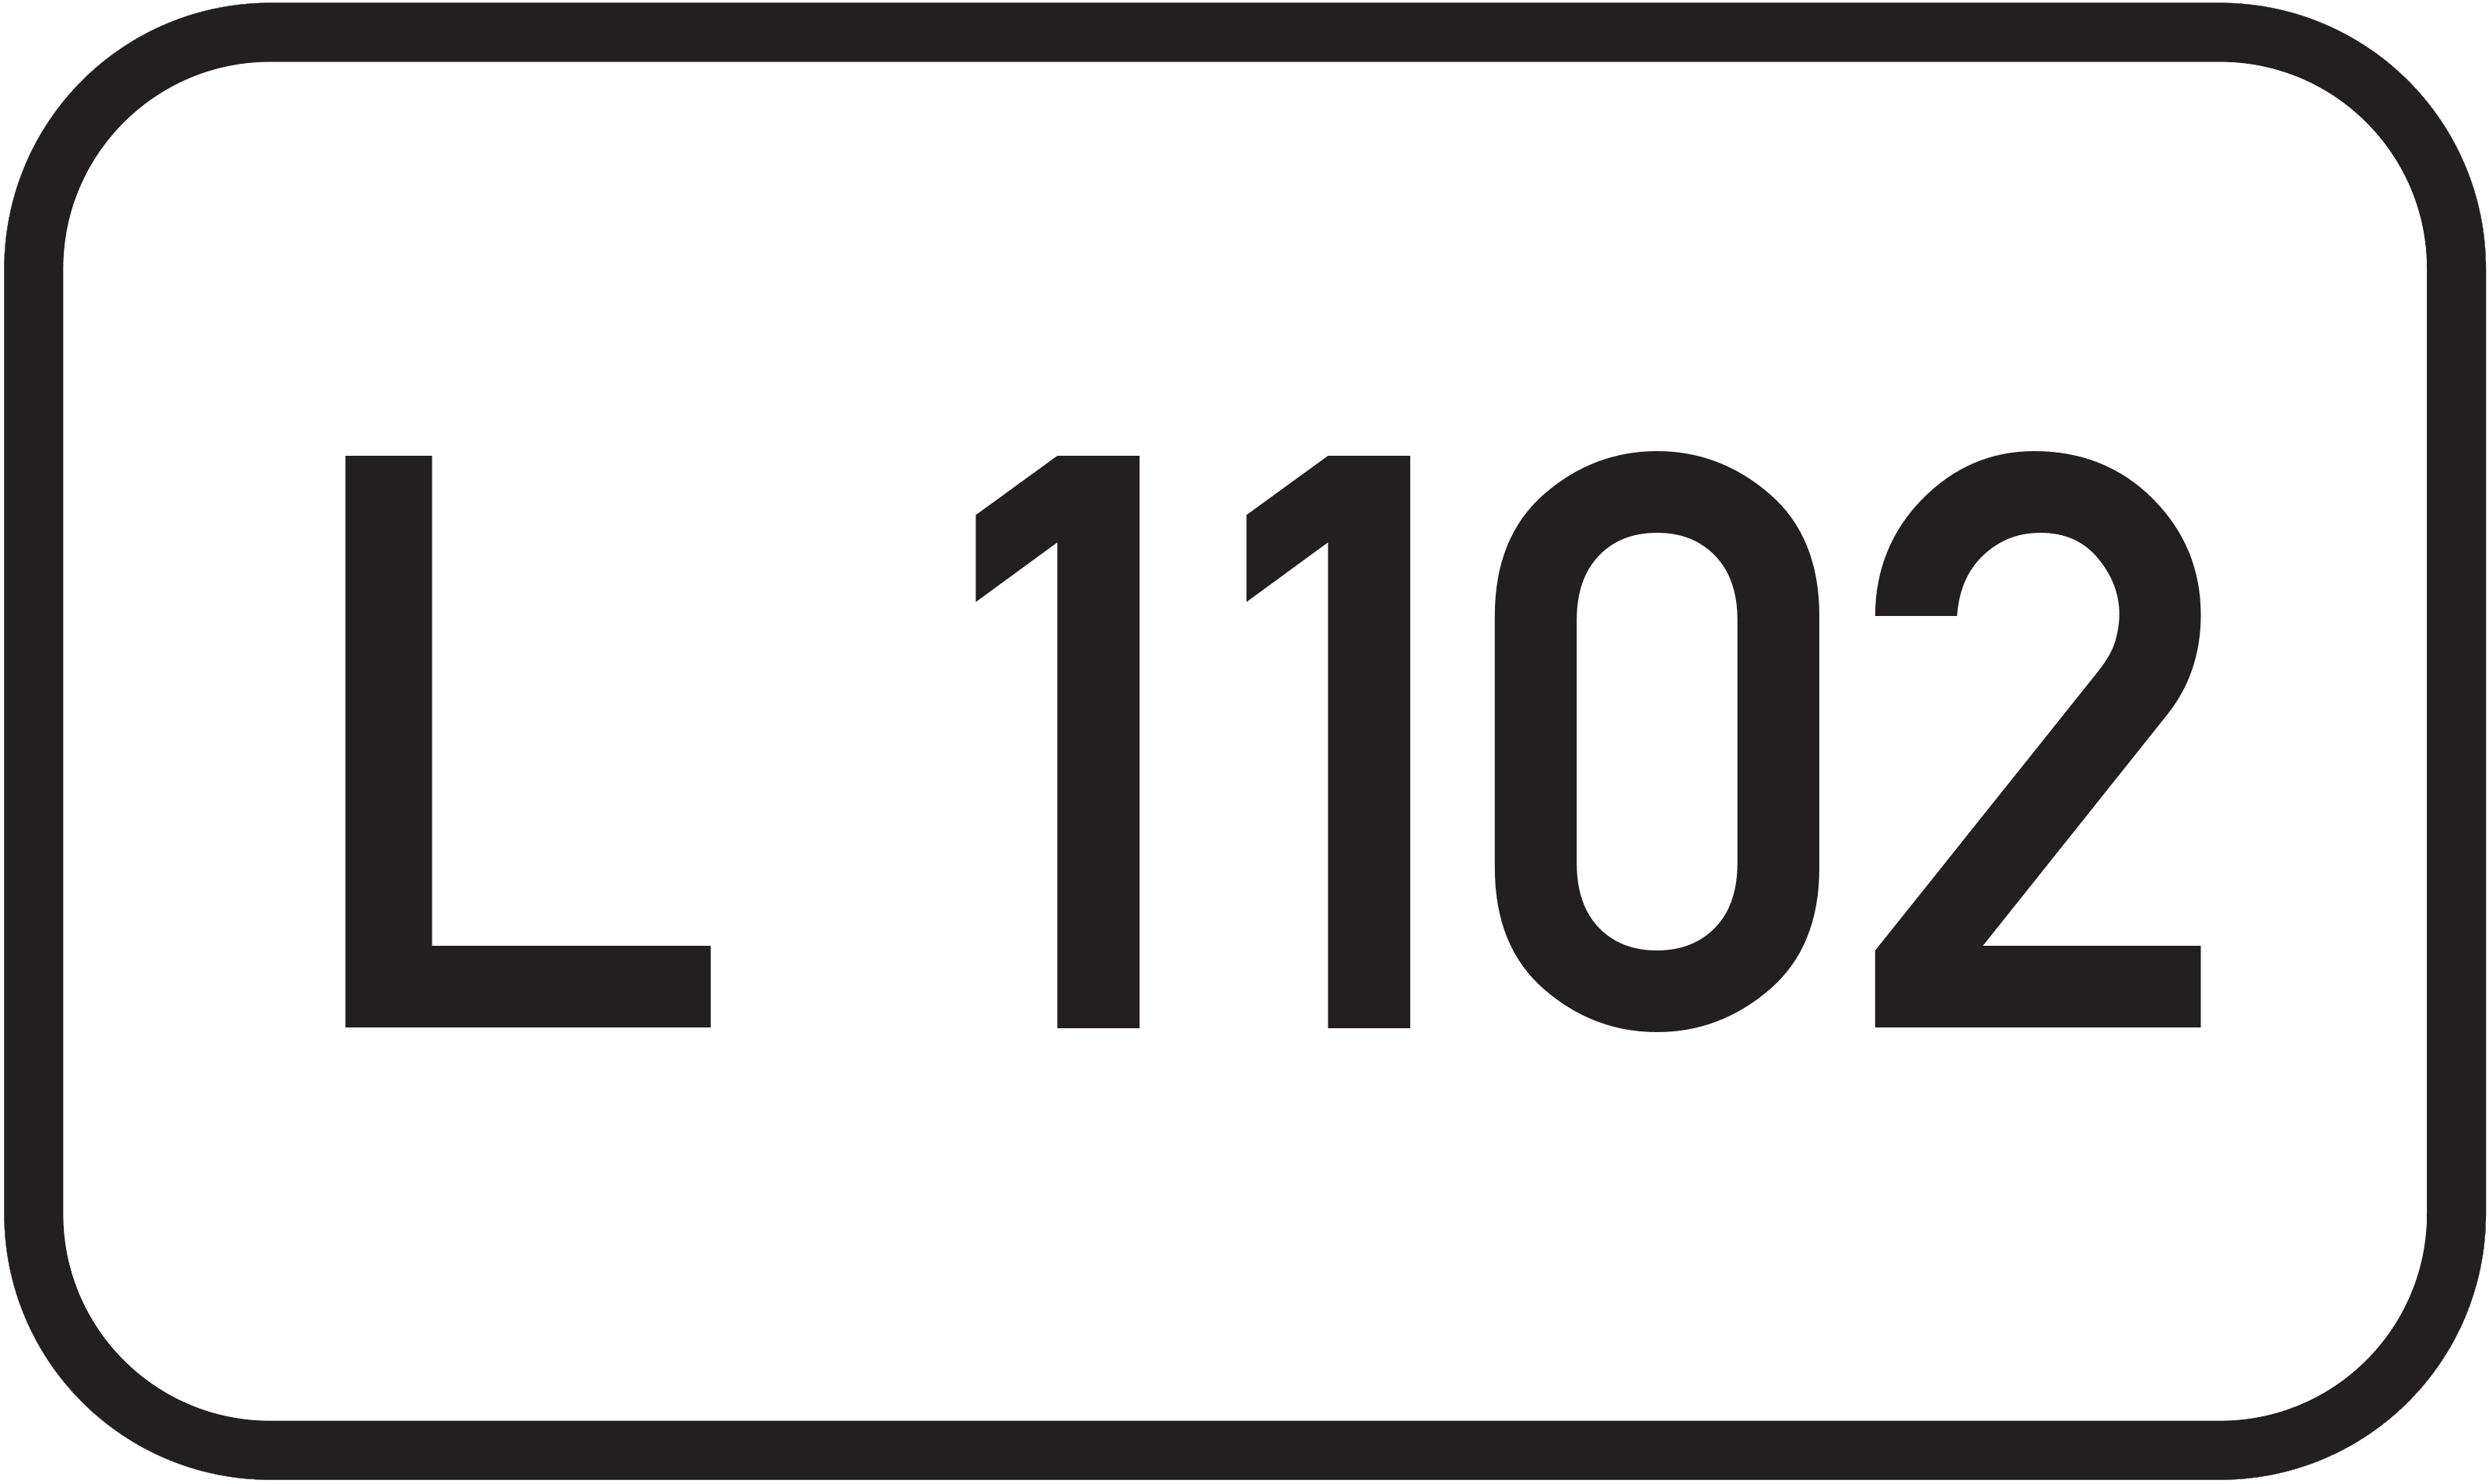 Landesstraße L 1102